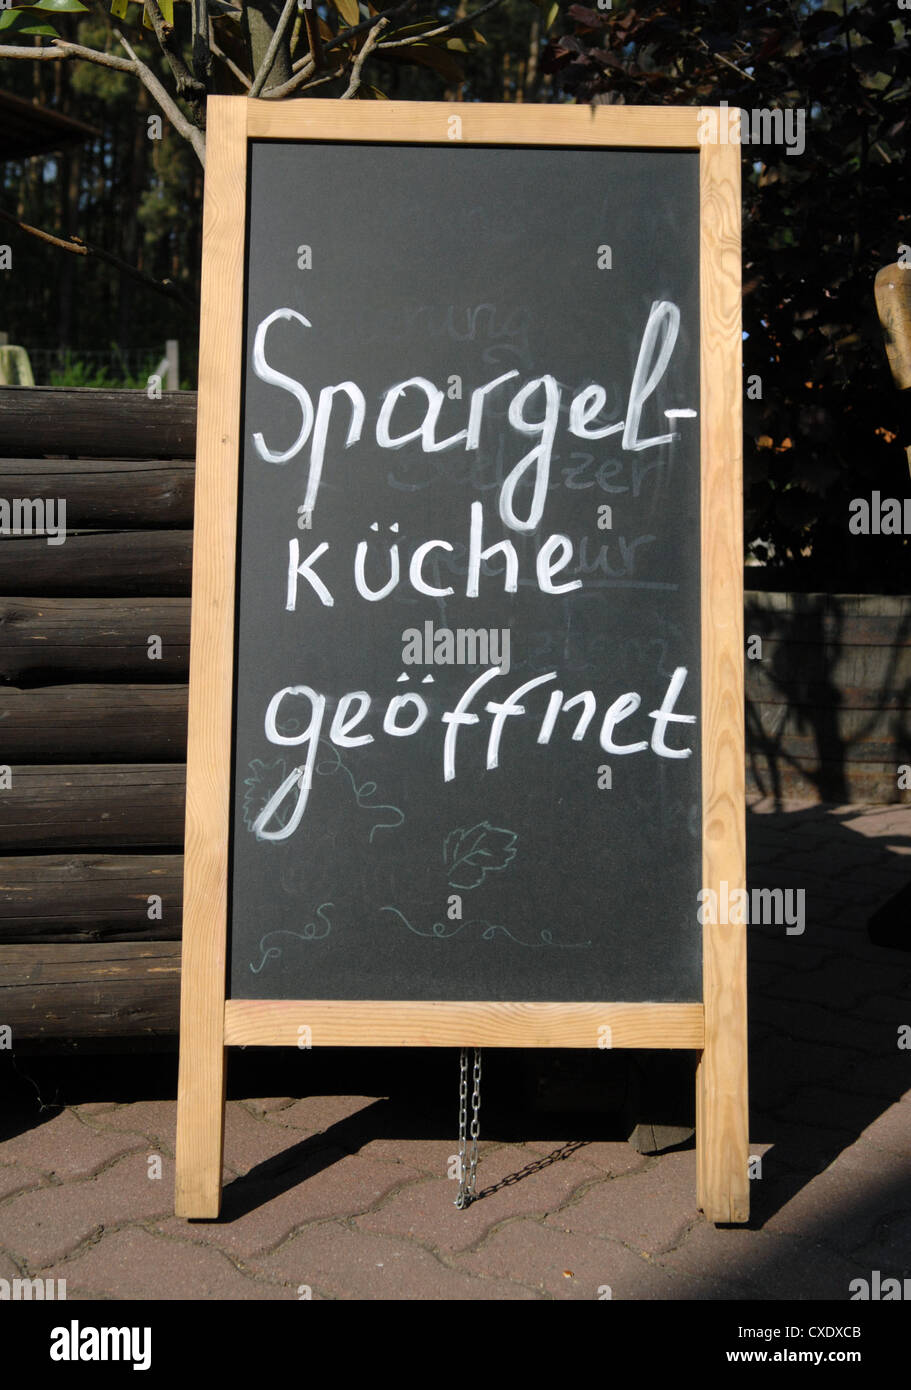 Klaistow, espárragos ofrecen en Brandeburgo Foto de stock